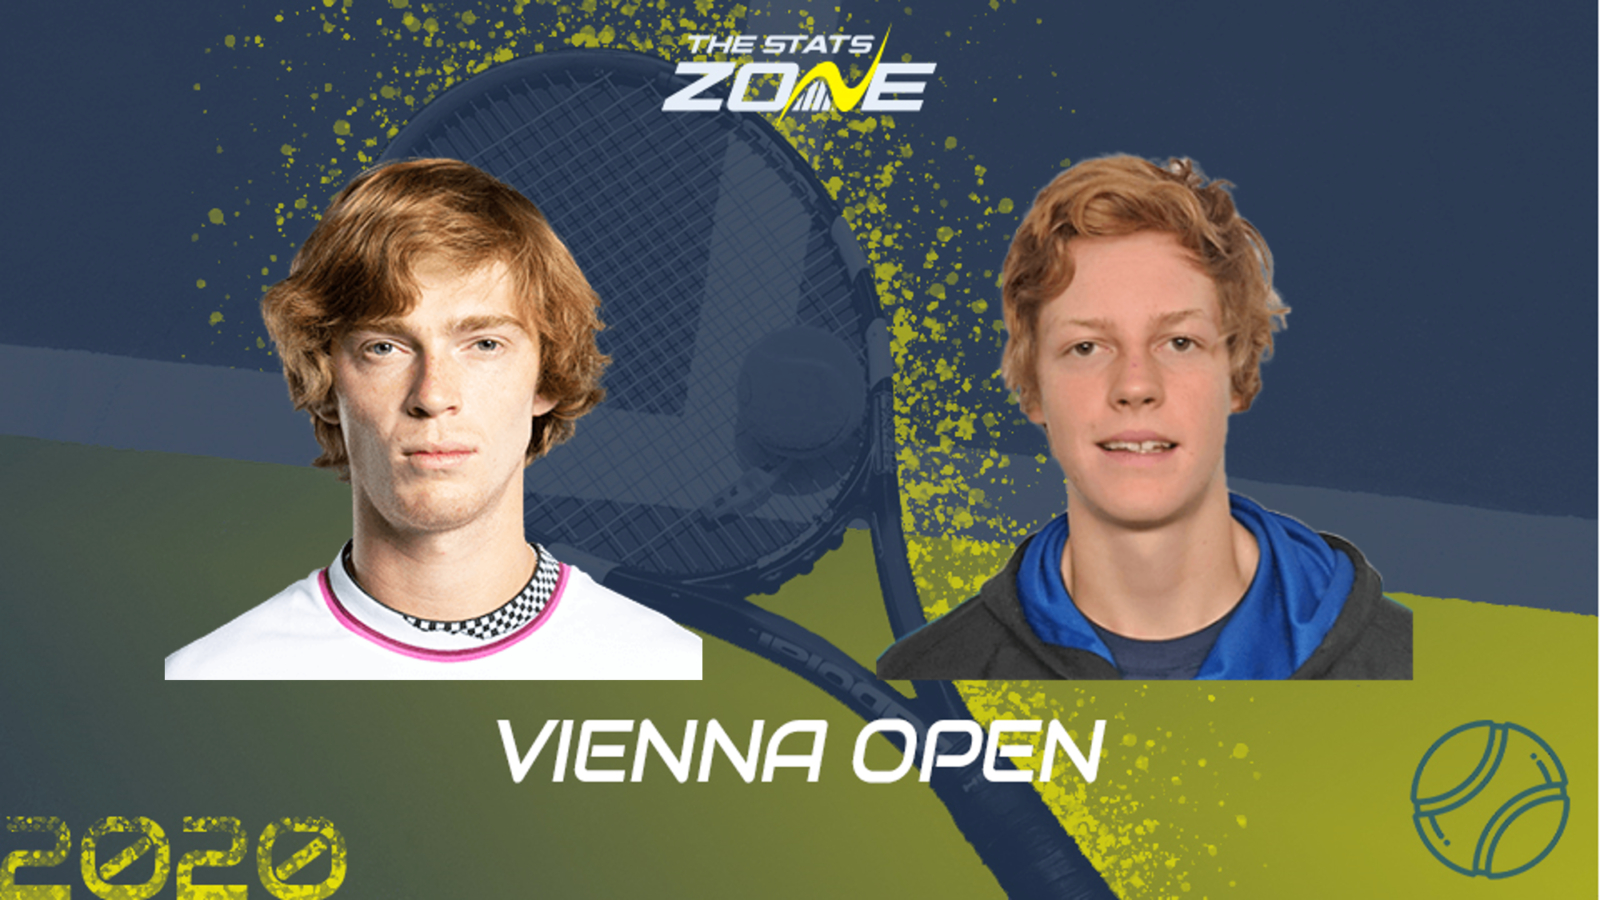 2020 Vienna Open Round of 16 – Andrey Rublev vs Jannik Sinner Preview